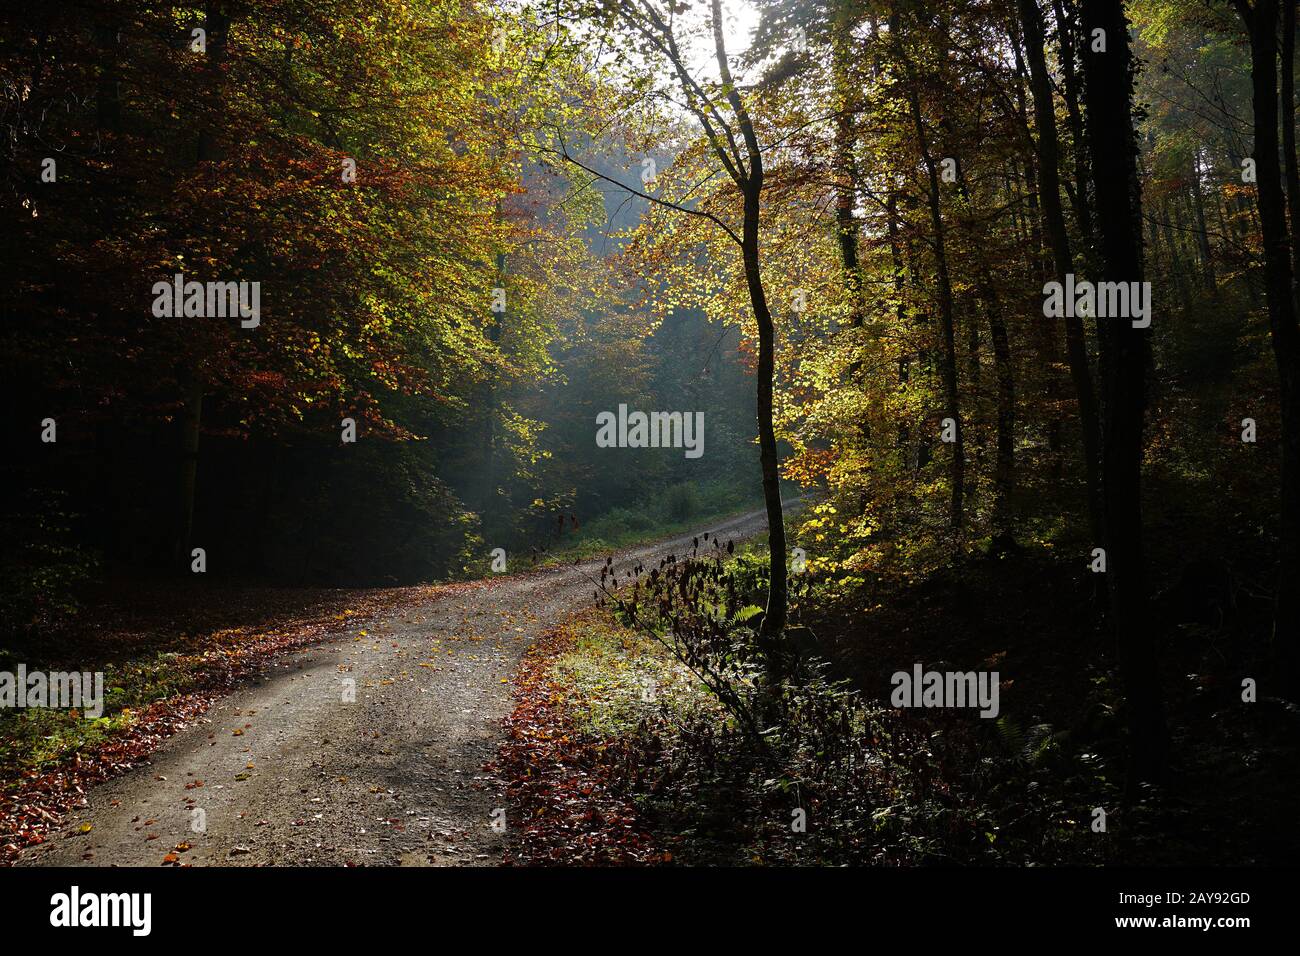 autumn forest, backlight, frontlighting, autumn mood Stock Photo